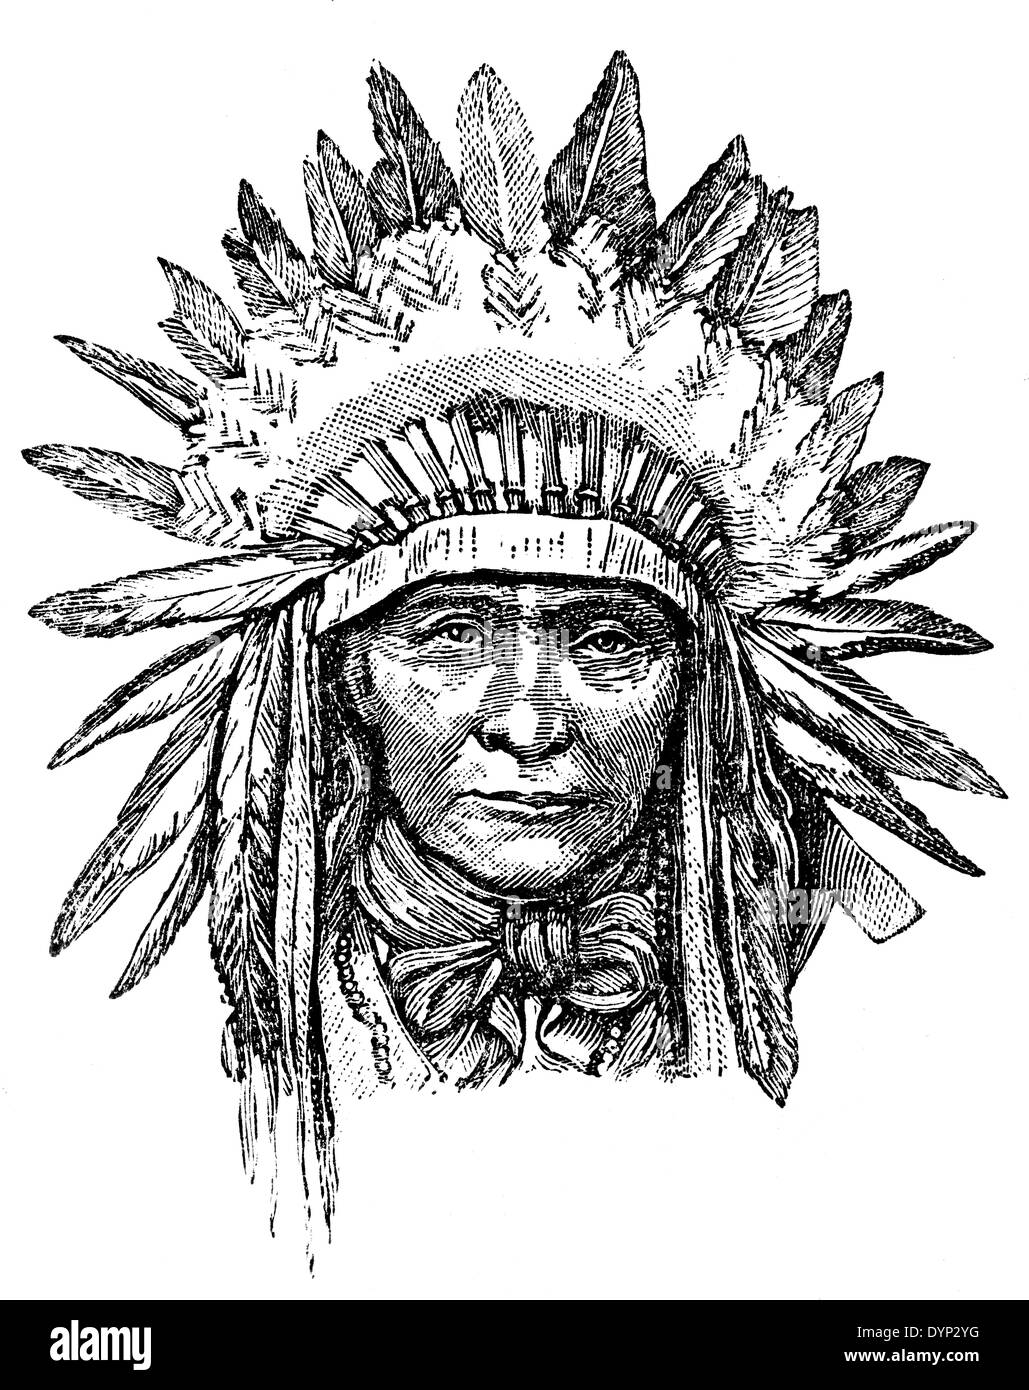 Capotribù tribali in abito tradizionale, Nord America, illustrazione da enciclopedia sovietica, 1926 Foto Stock